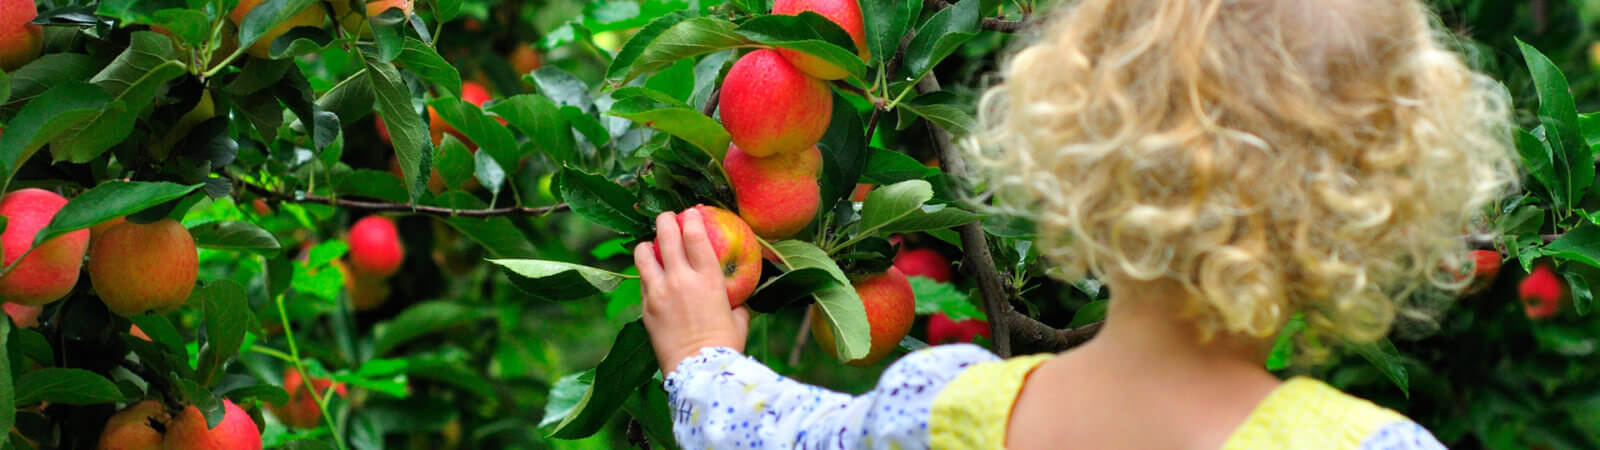 apple picking